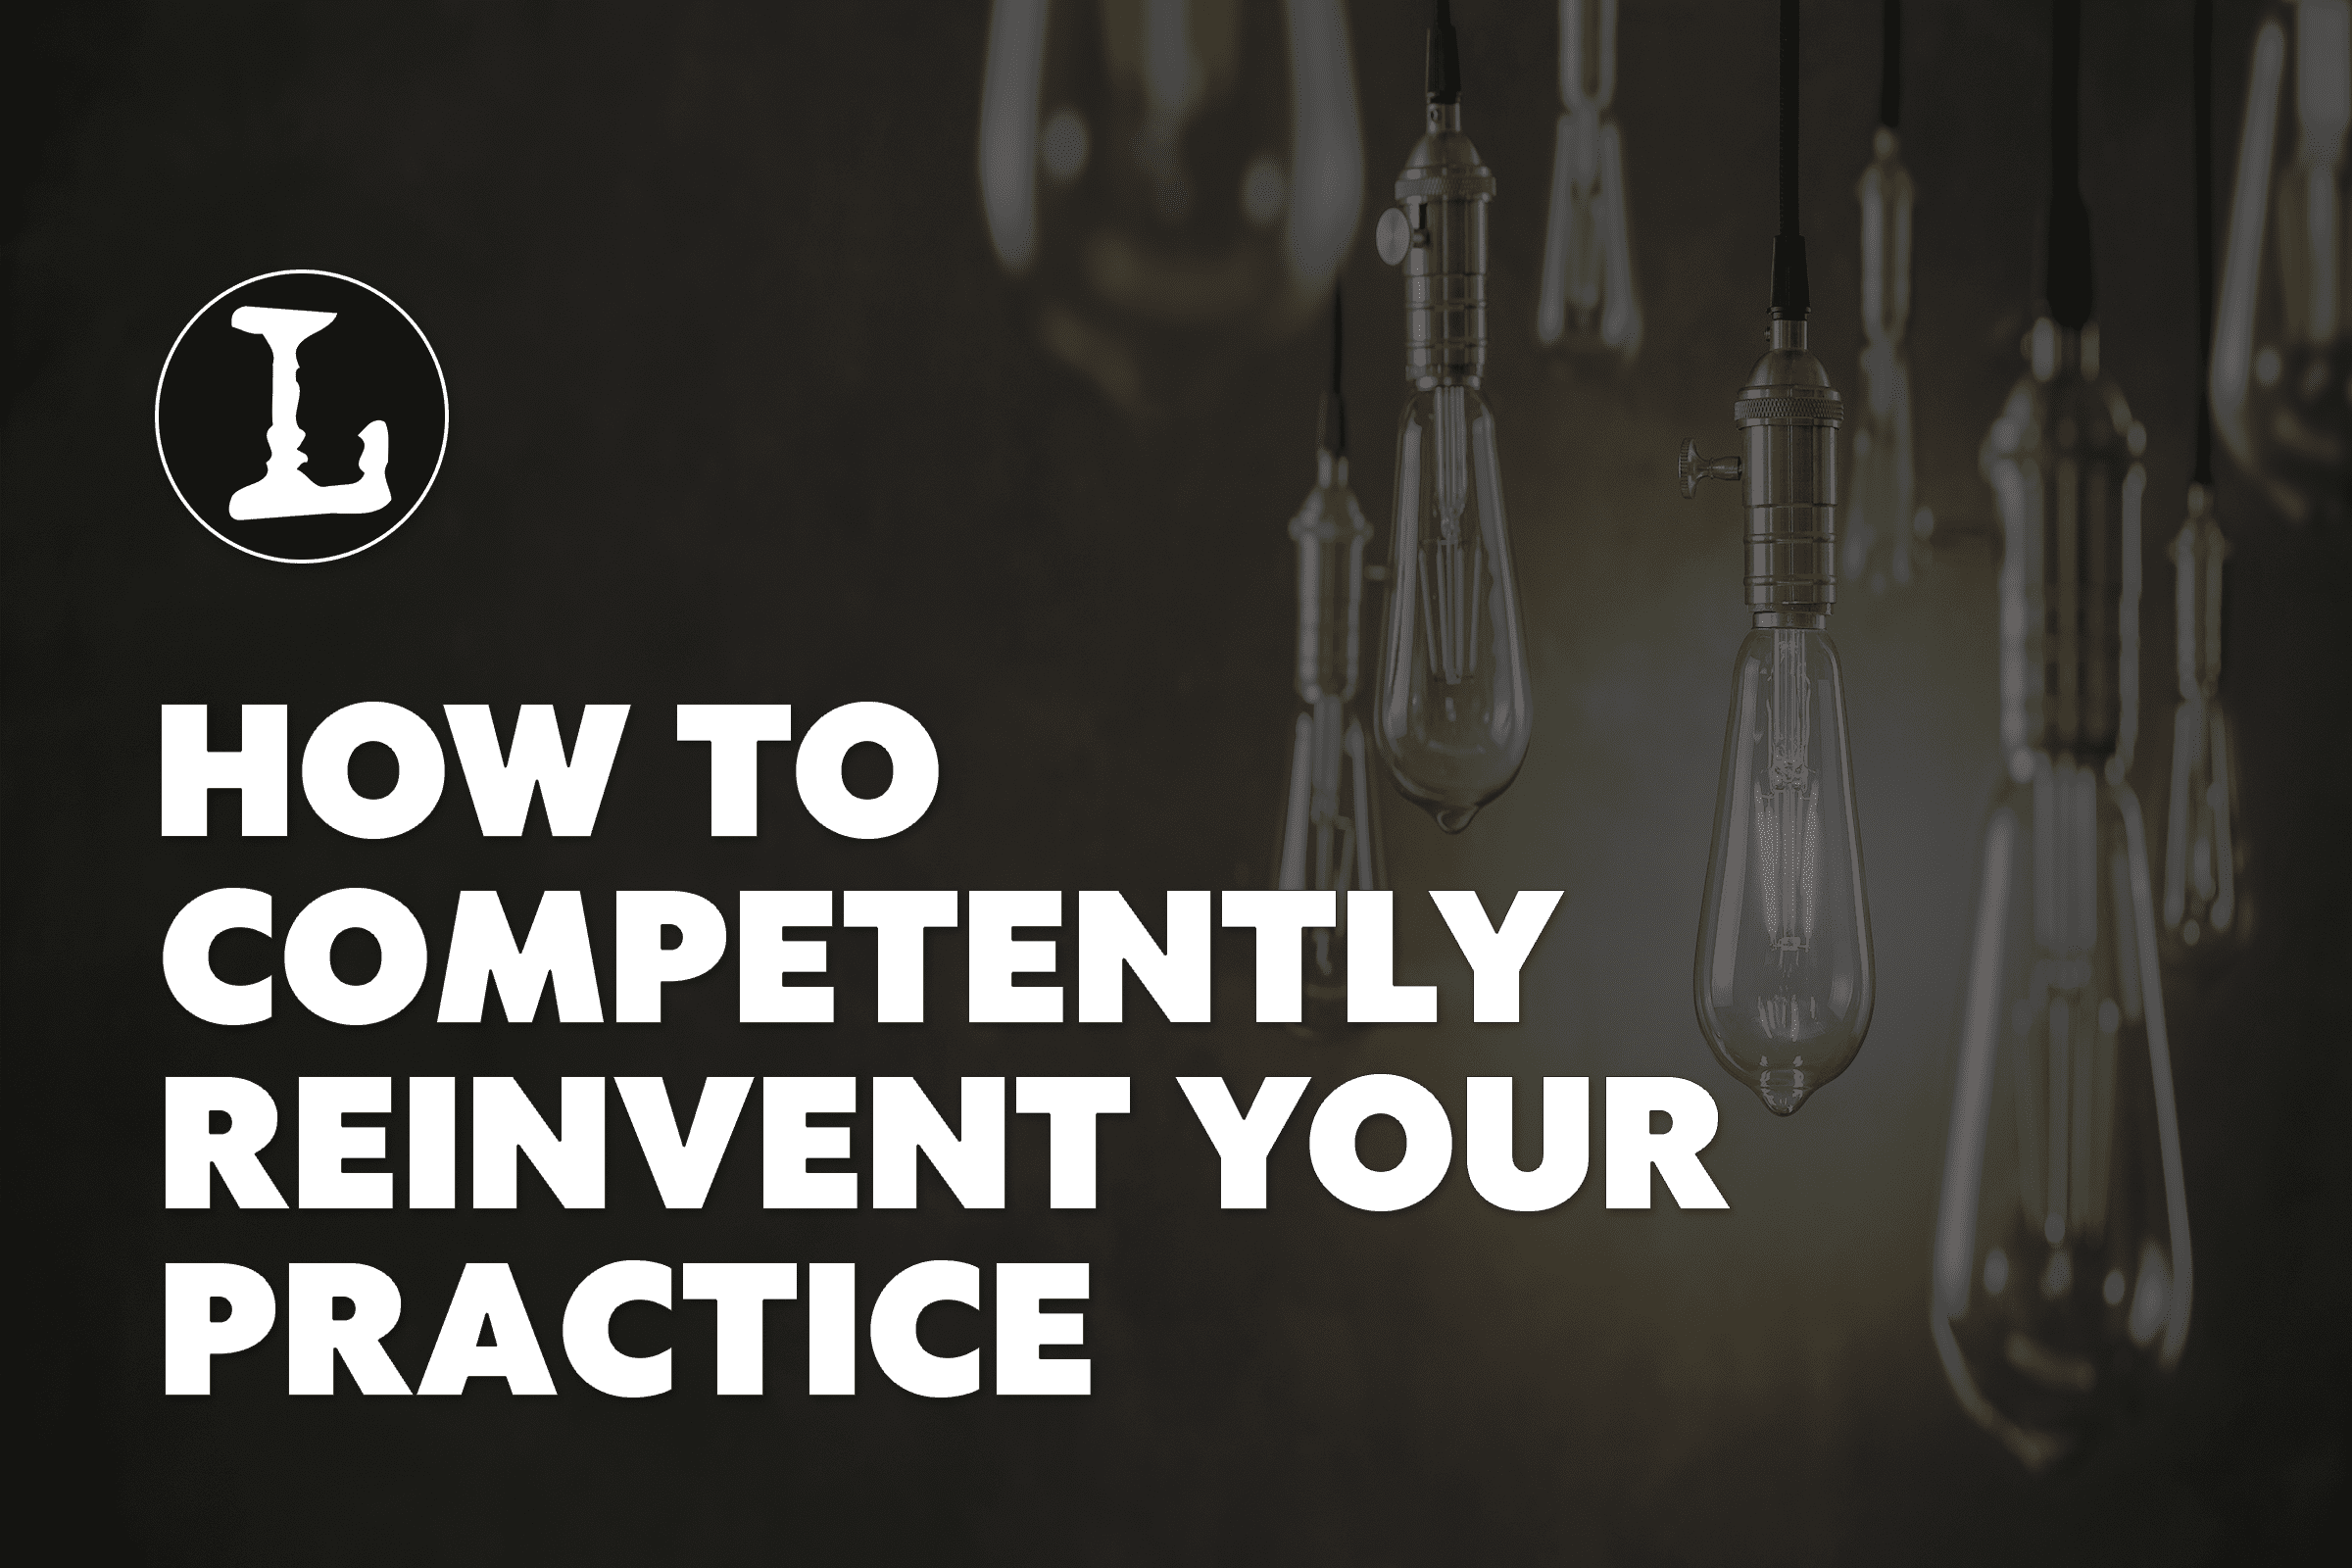 Reinvent your practice